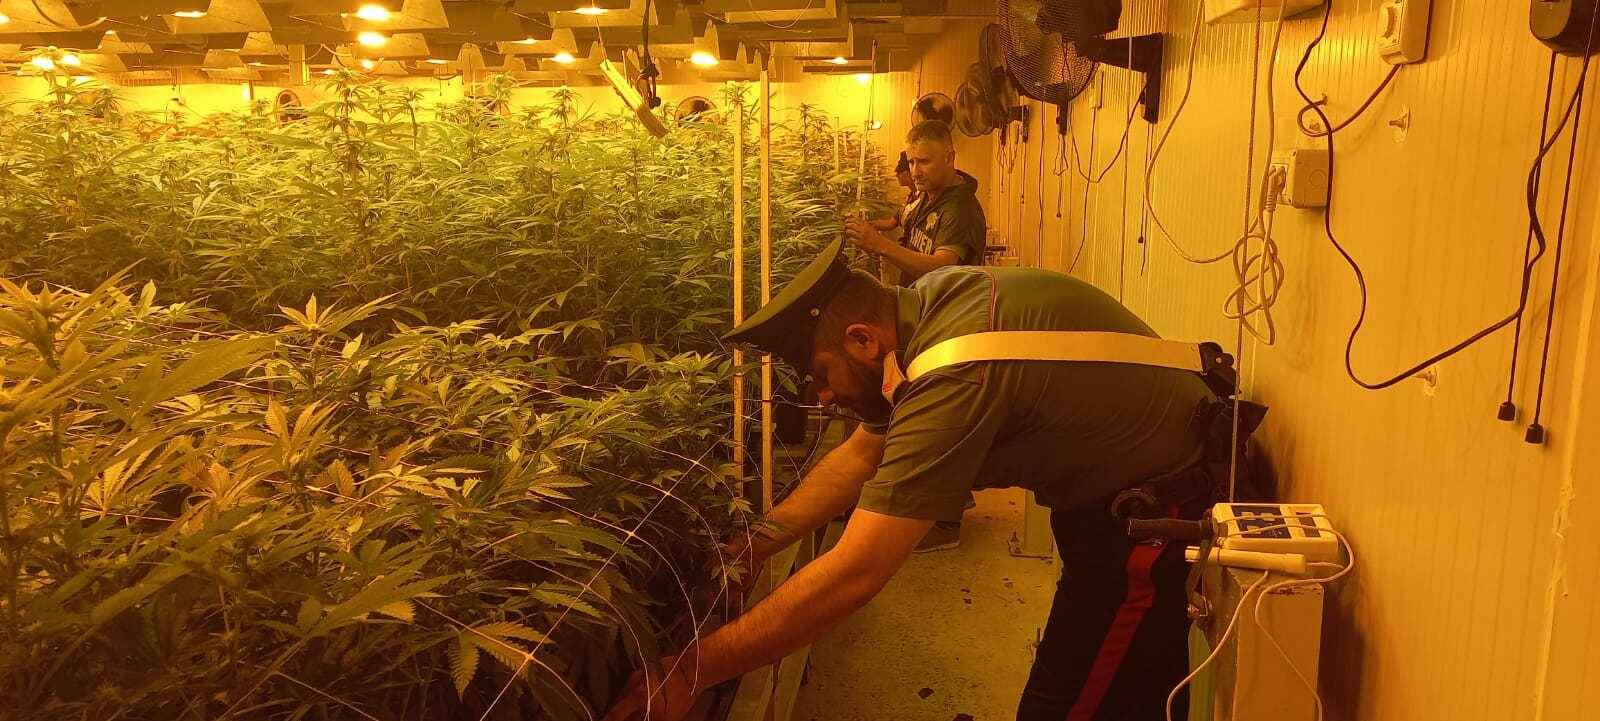 piantagione marijuana pomezia